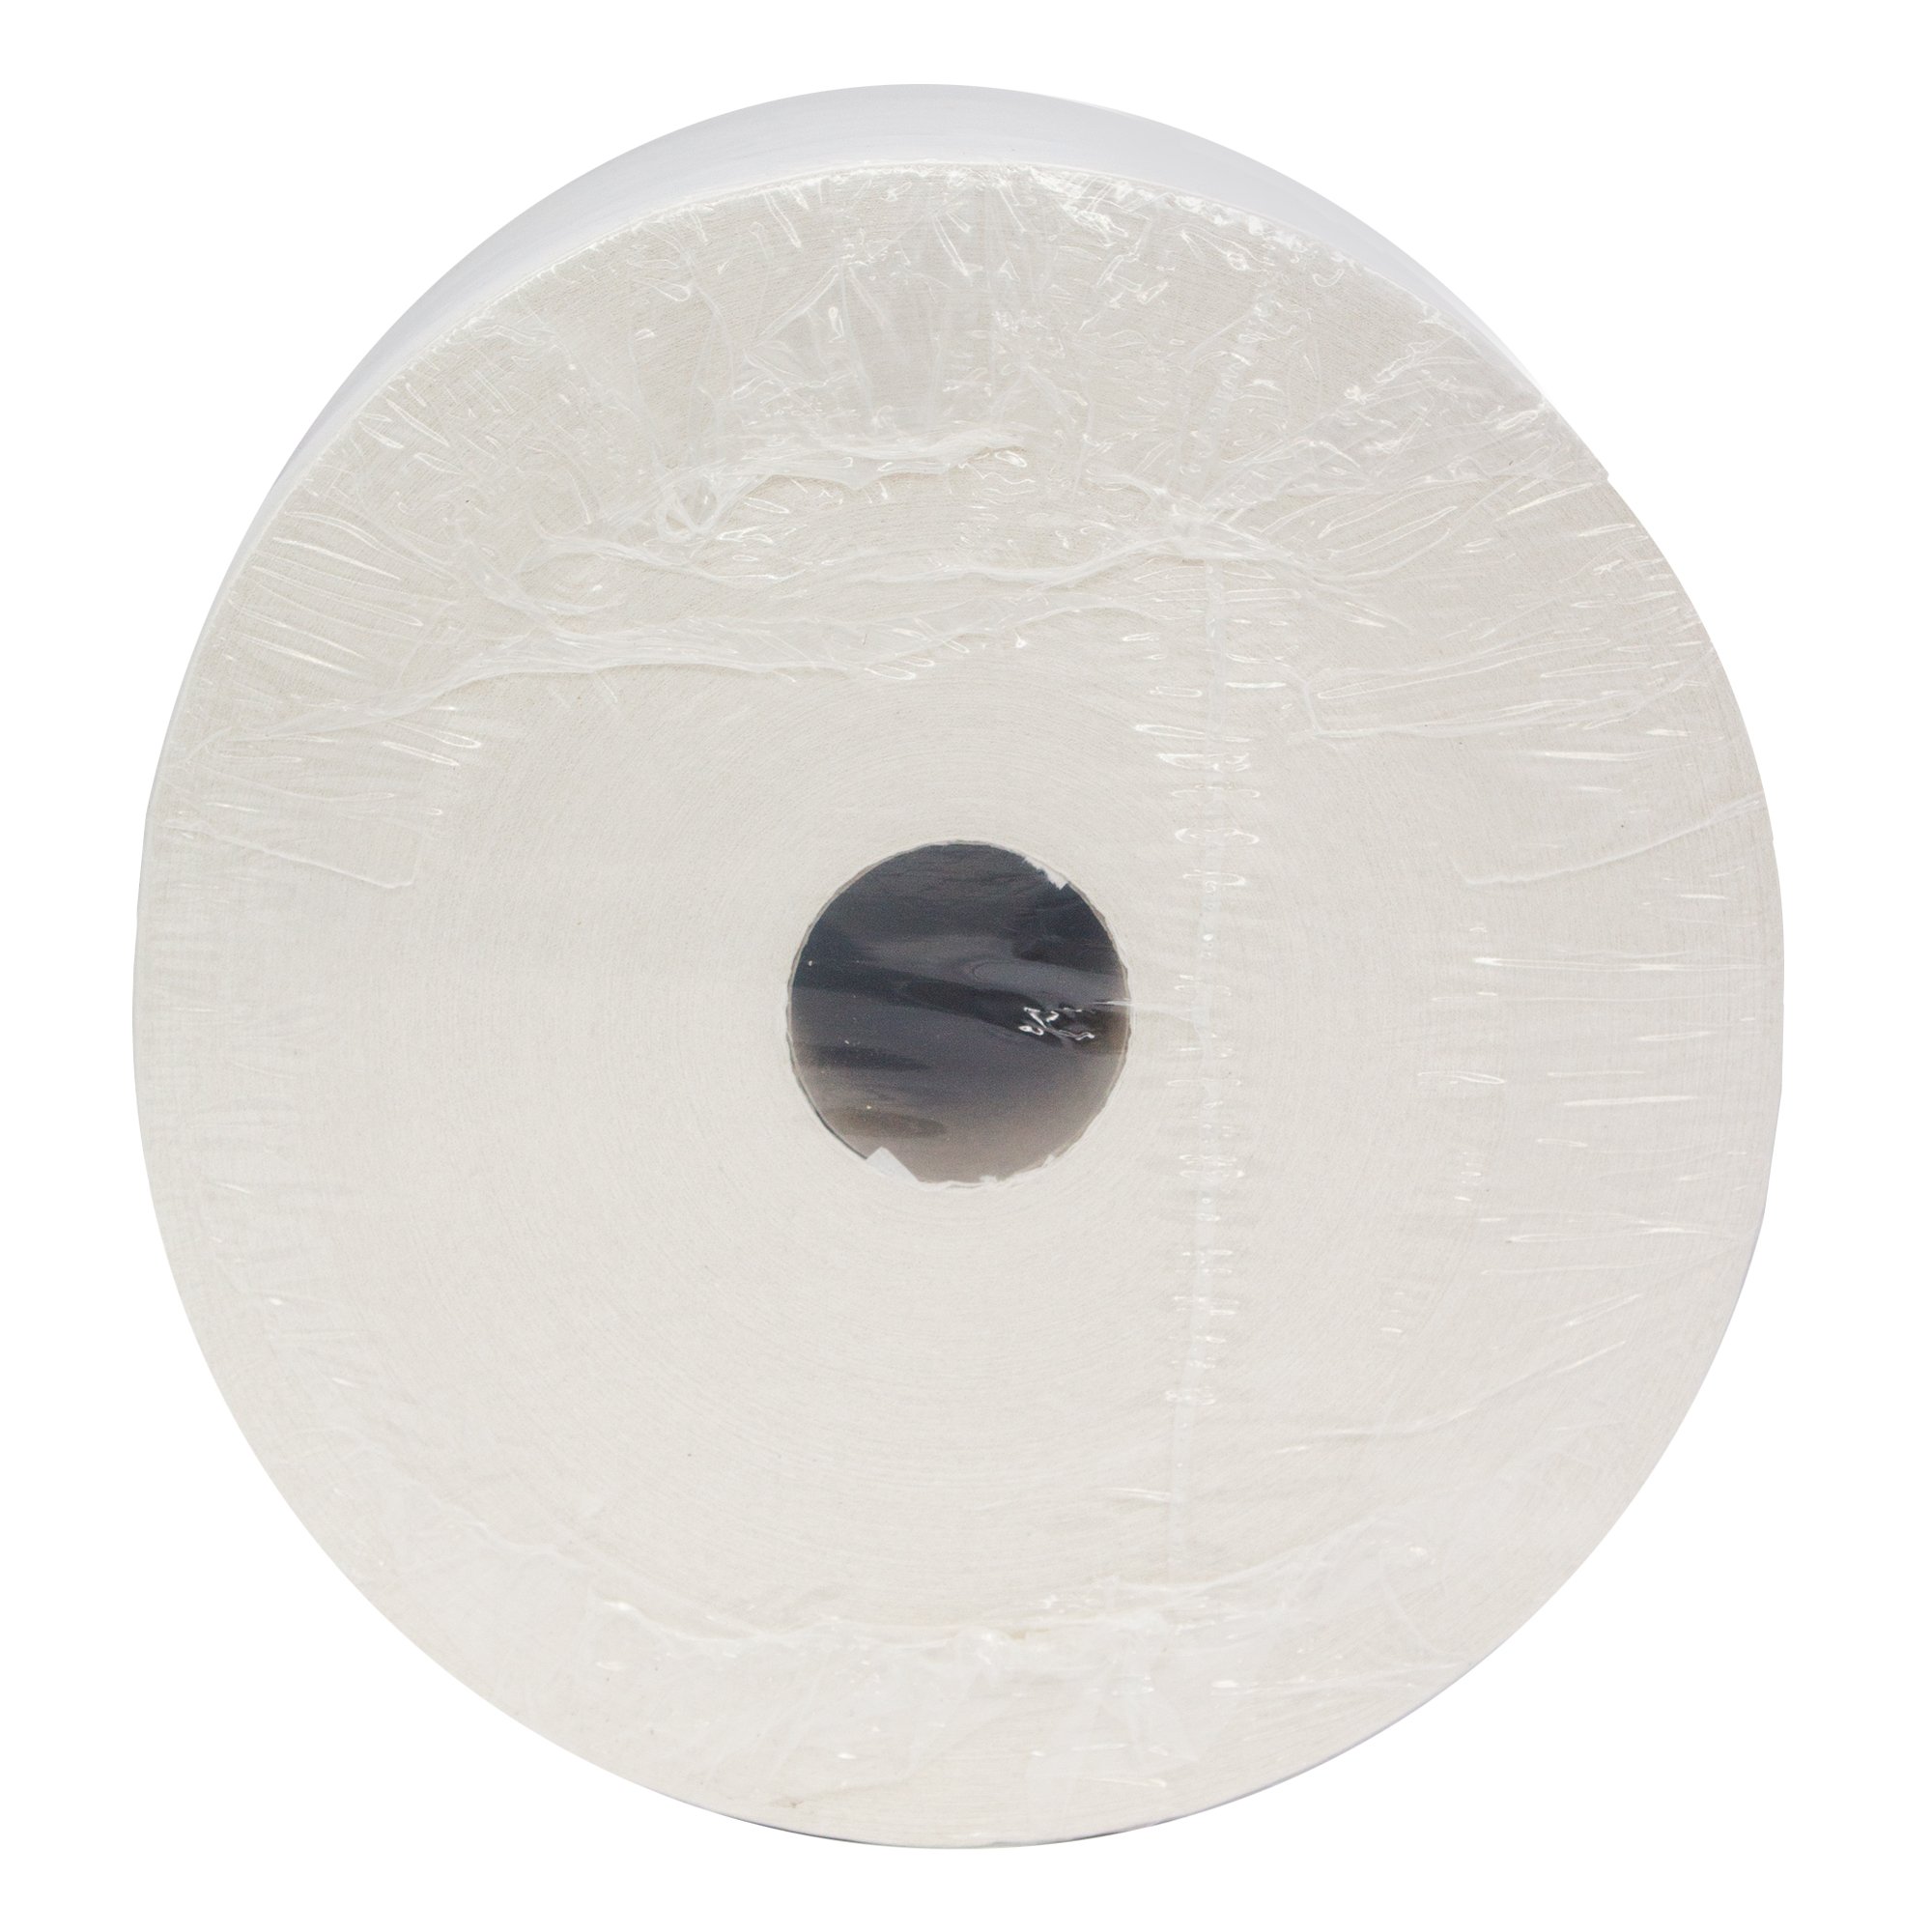 WypAll 7202 Papierwischtücher für Oberflächen Jumbo Großrolle L10 weiß 1-lagig, 23,5 cm breit, 1000 Tücher